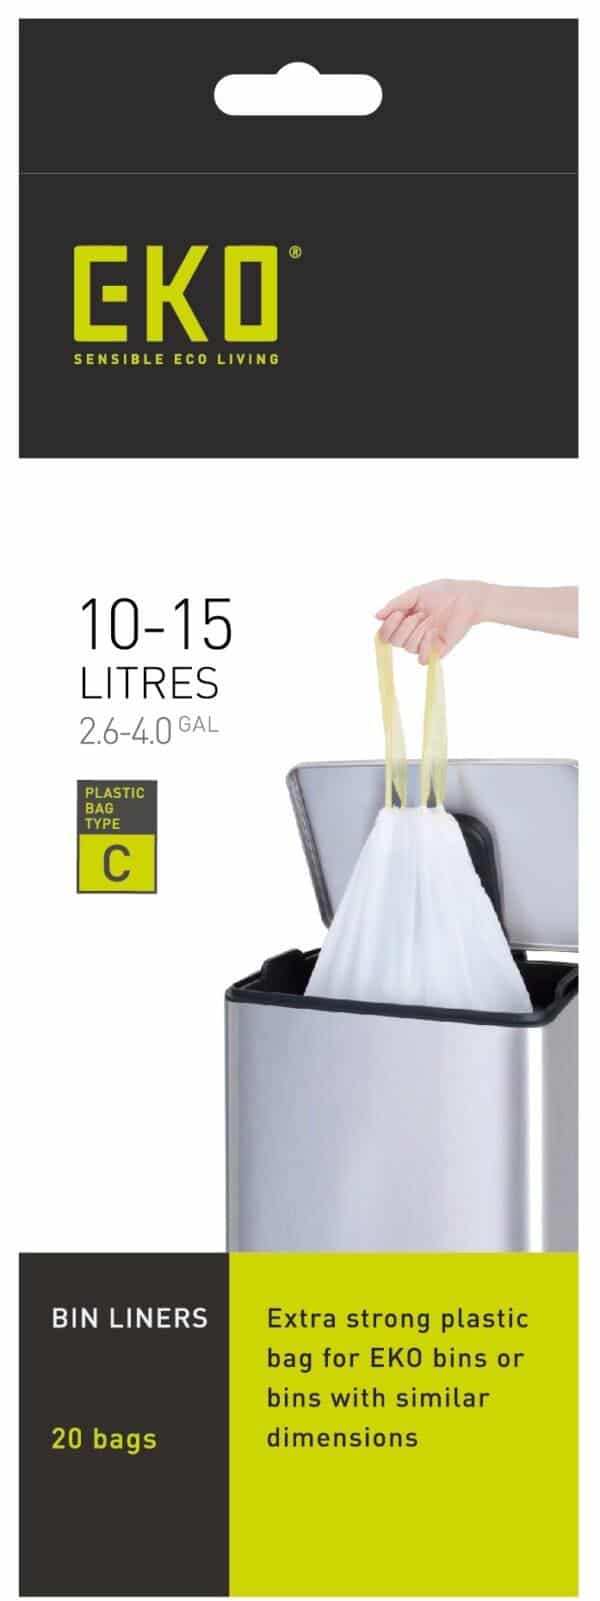 Eko Size C bin liners 10-15L, 20 bags.